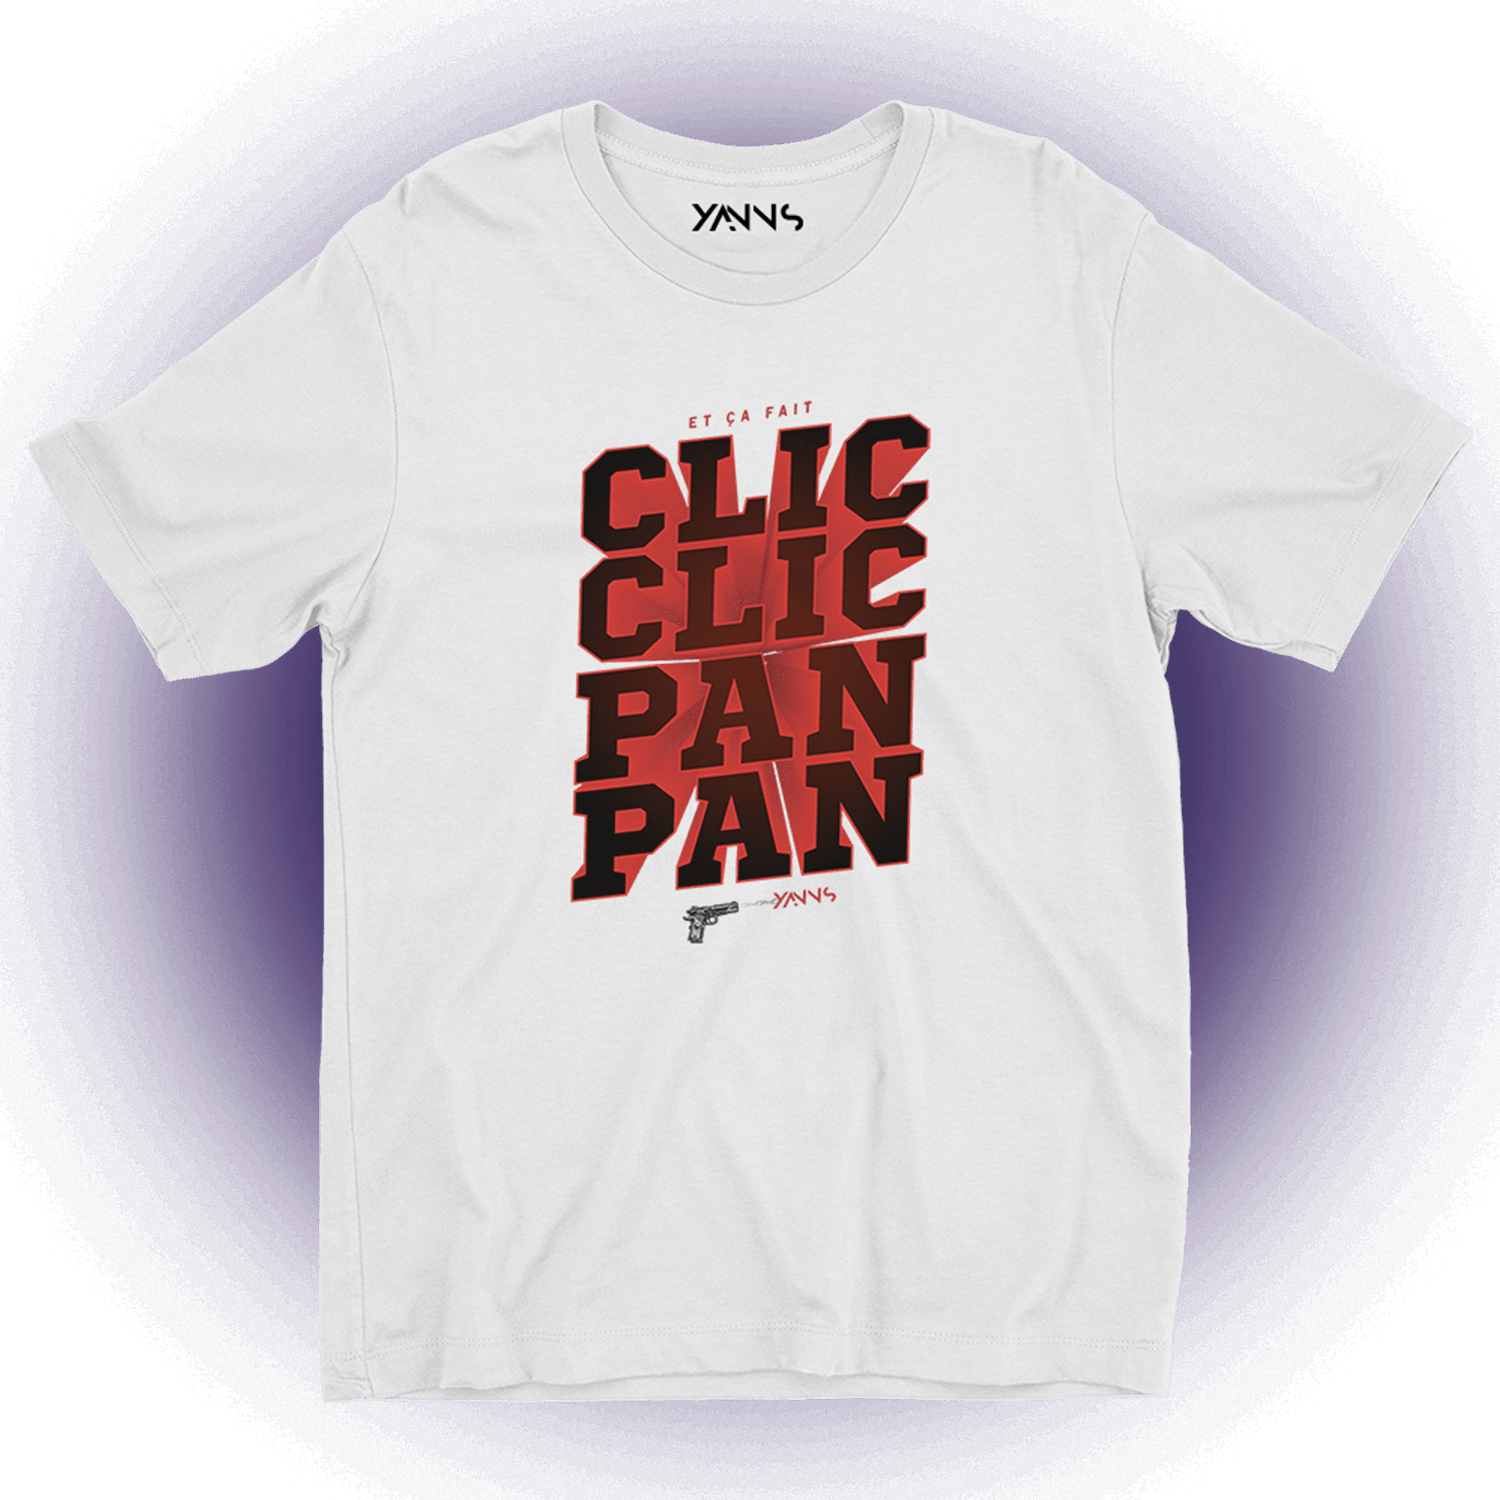 Clip Yanns - Clic clic pan pan